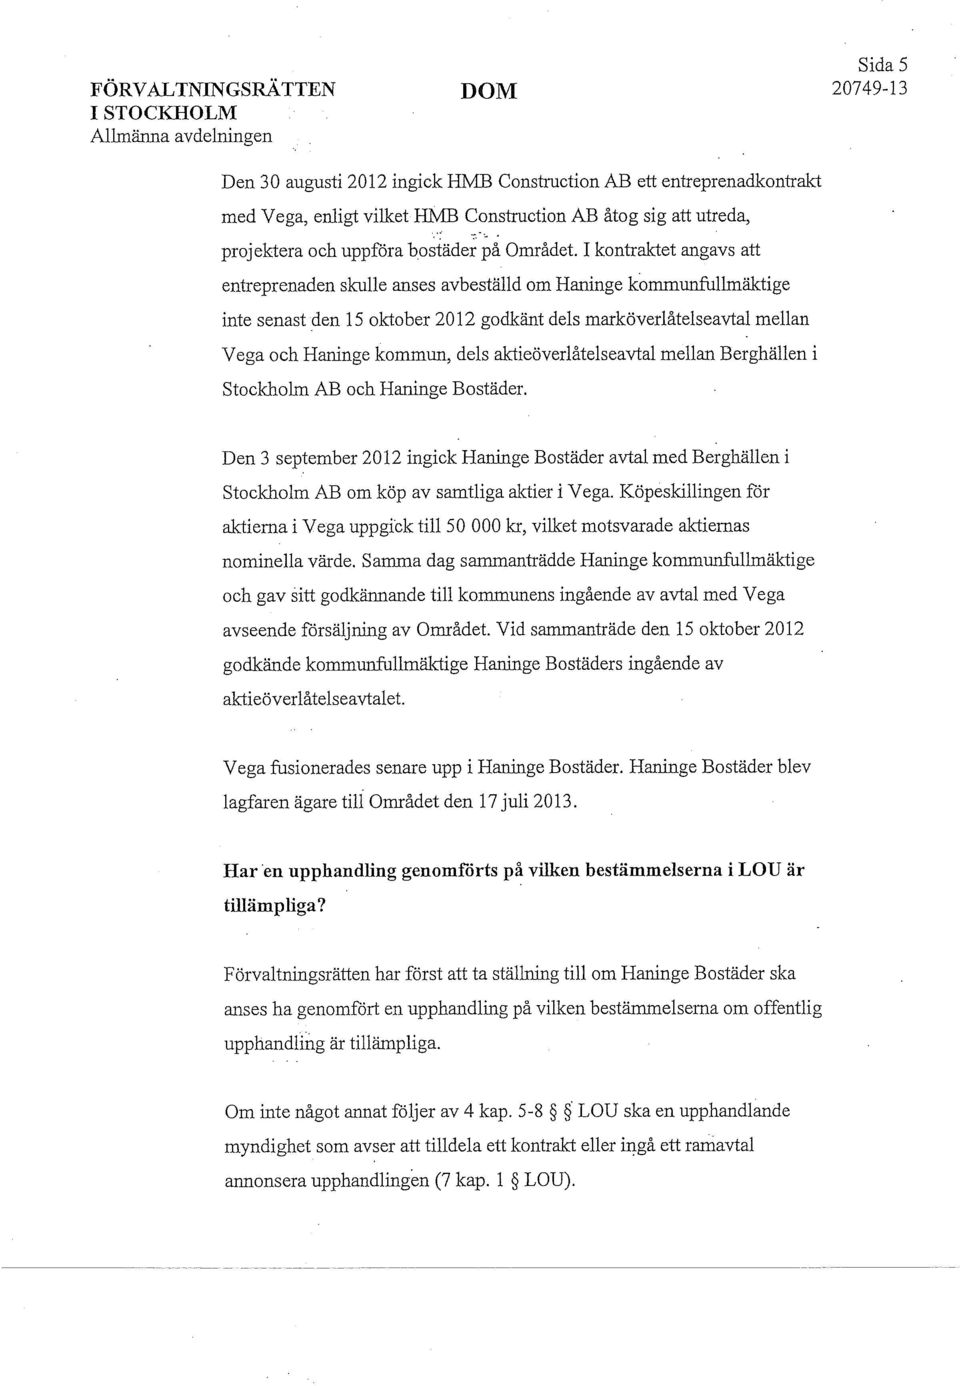 aktieöverlåtelseavtal mellan Berghällen i Stockholm AB och Haninge Bostäder. Den 3 september 2012 ingick Haninge Bostäder avtal med Berghällen i Stockholm AB om köp av samtliga aktier i Vega.